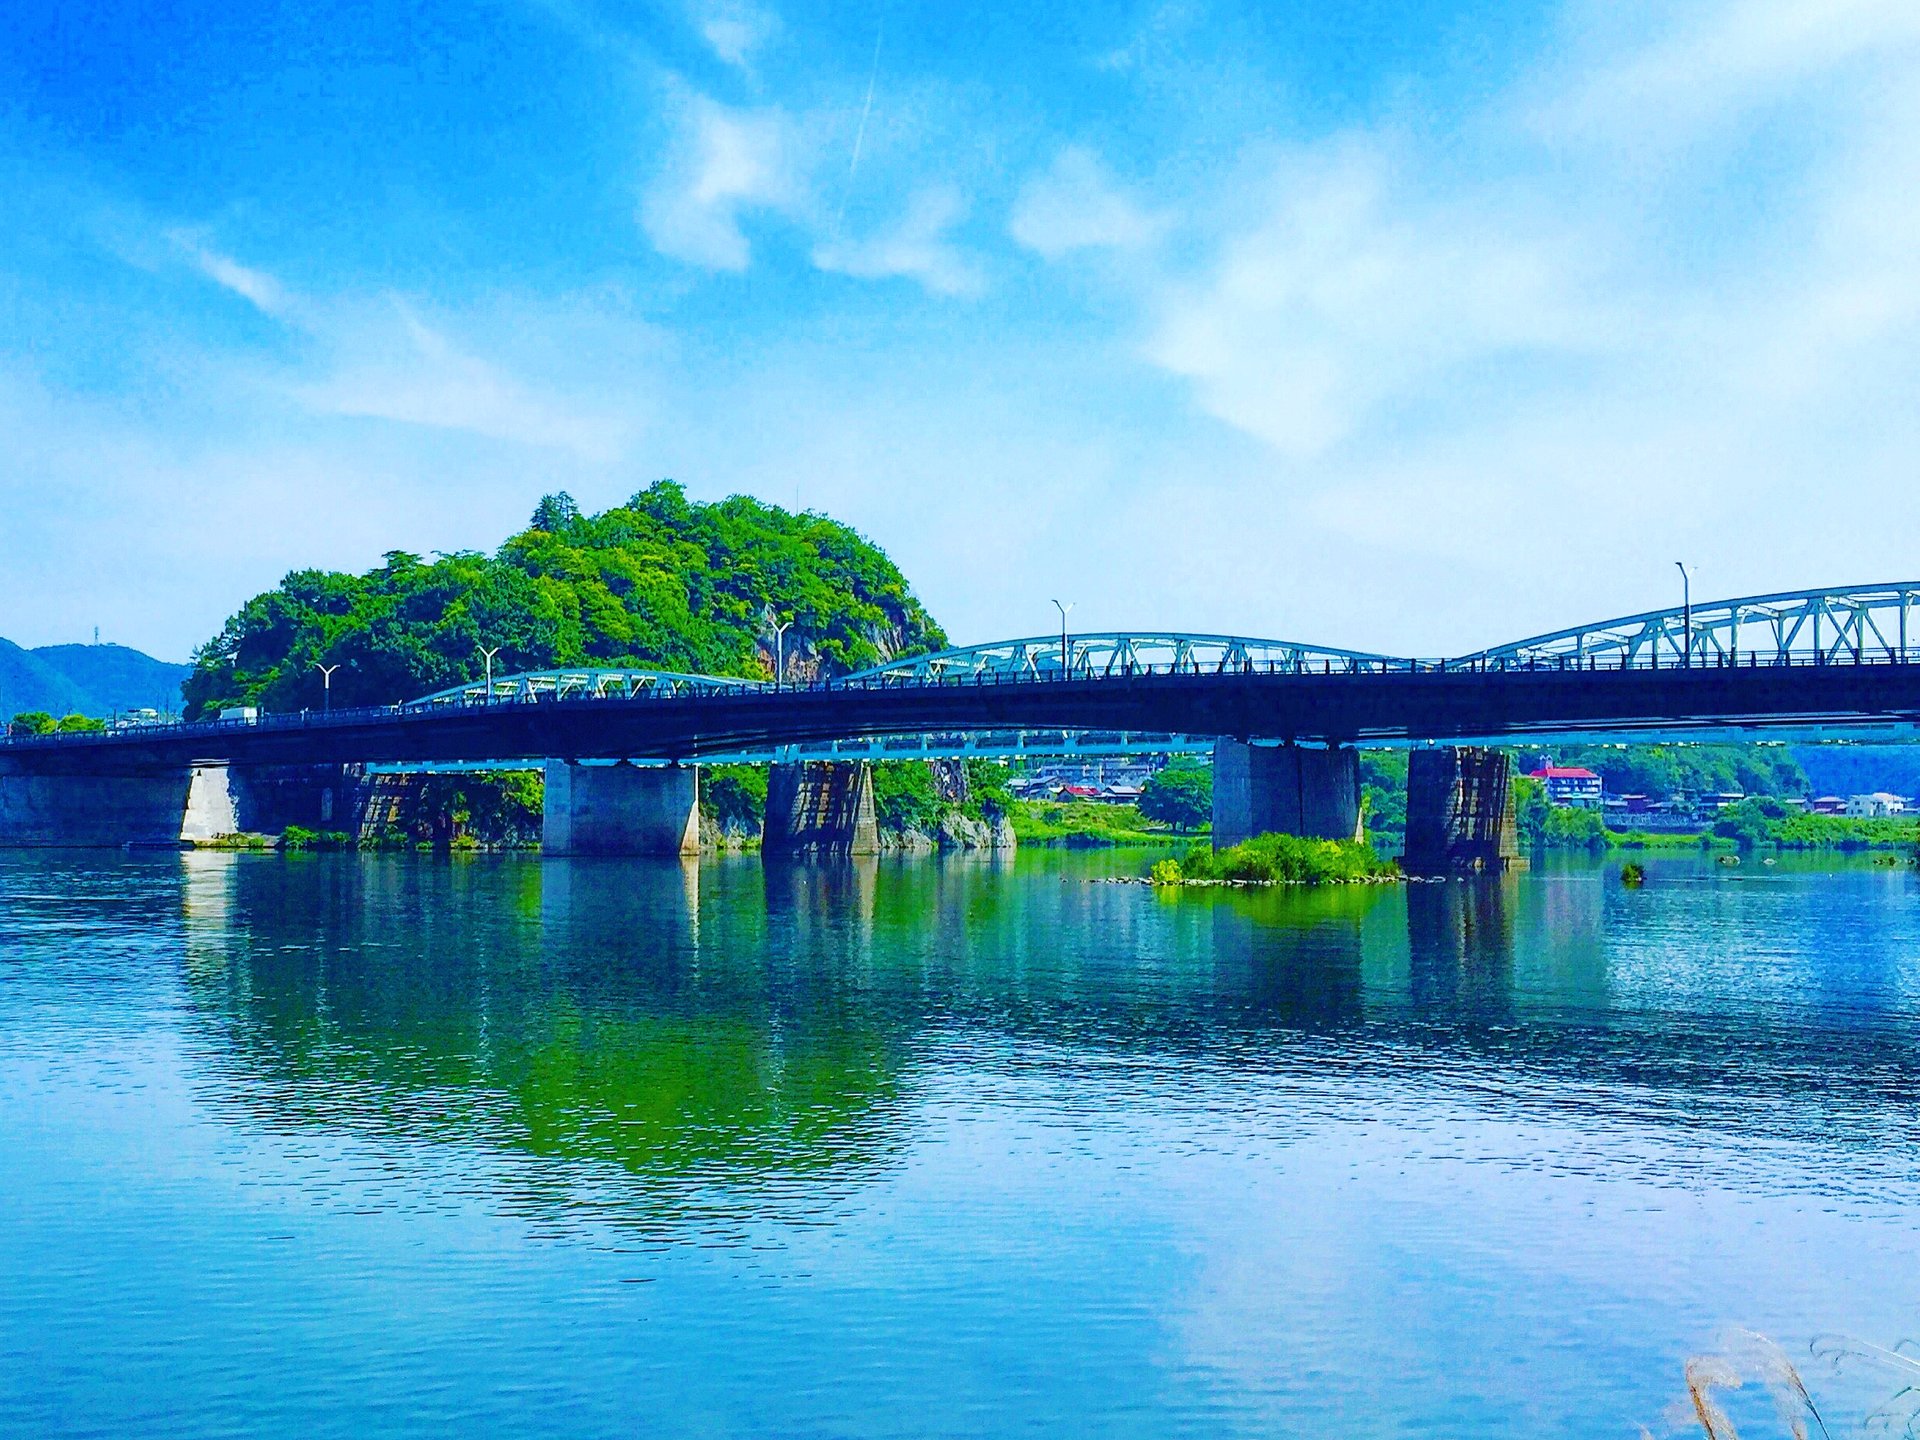 【木曽川沿いに観光へ】豊かな自然、歴史ある街並みを歩いてみよう。